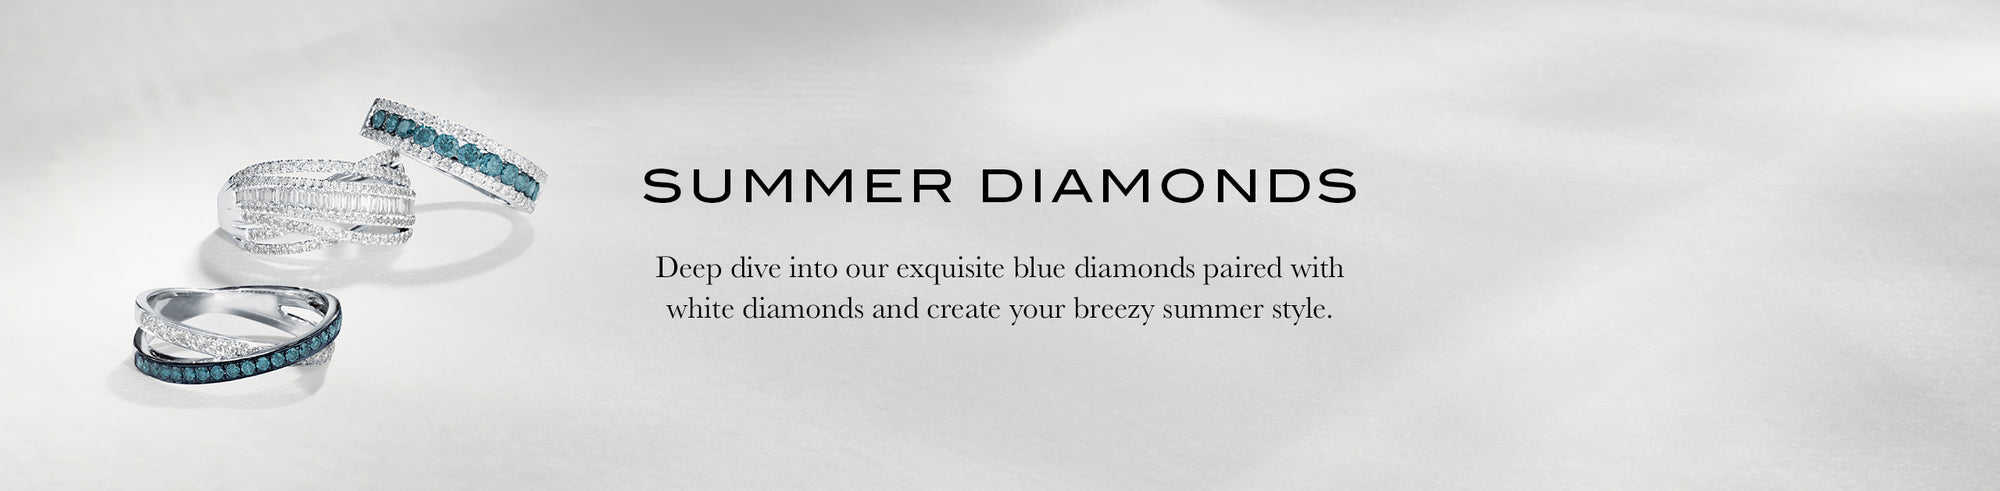 Summer Diamonds